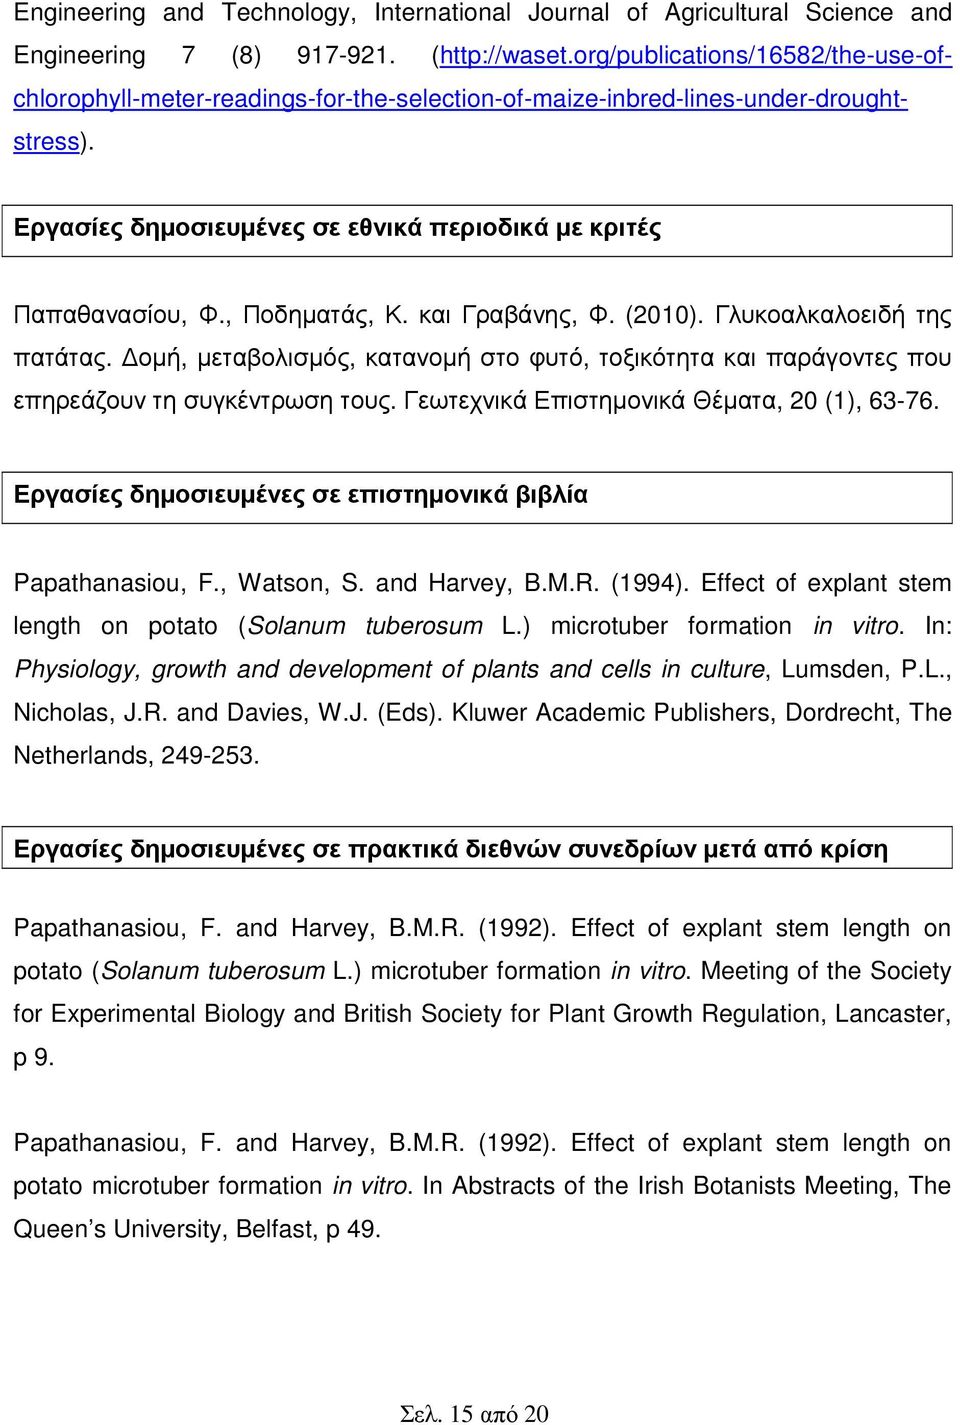 , Ποδηµατάς, Κ. και Γραβάνης, Φ. (2010). Γλυκοαλκαλοειδή της πατάτας. οµή, µεταβολισµός, κατανοµή στο φυτό, τοξικότητα και παράγοντες που επηρεάζουν τη συγκέντρωση τους.